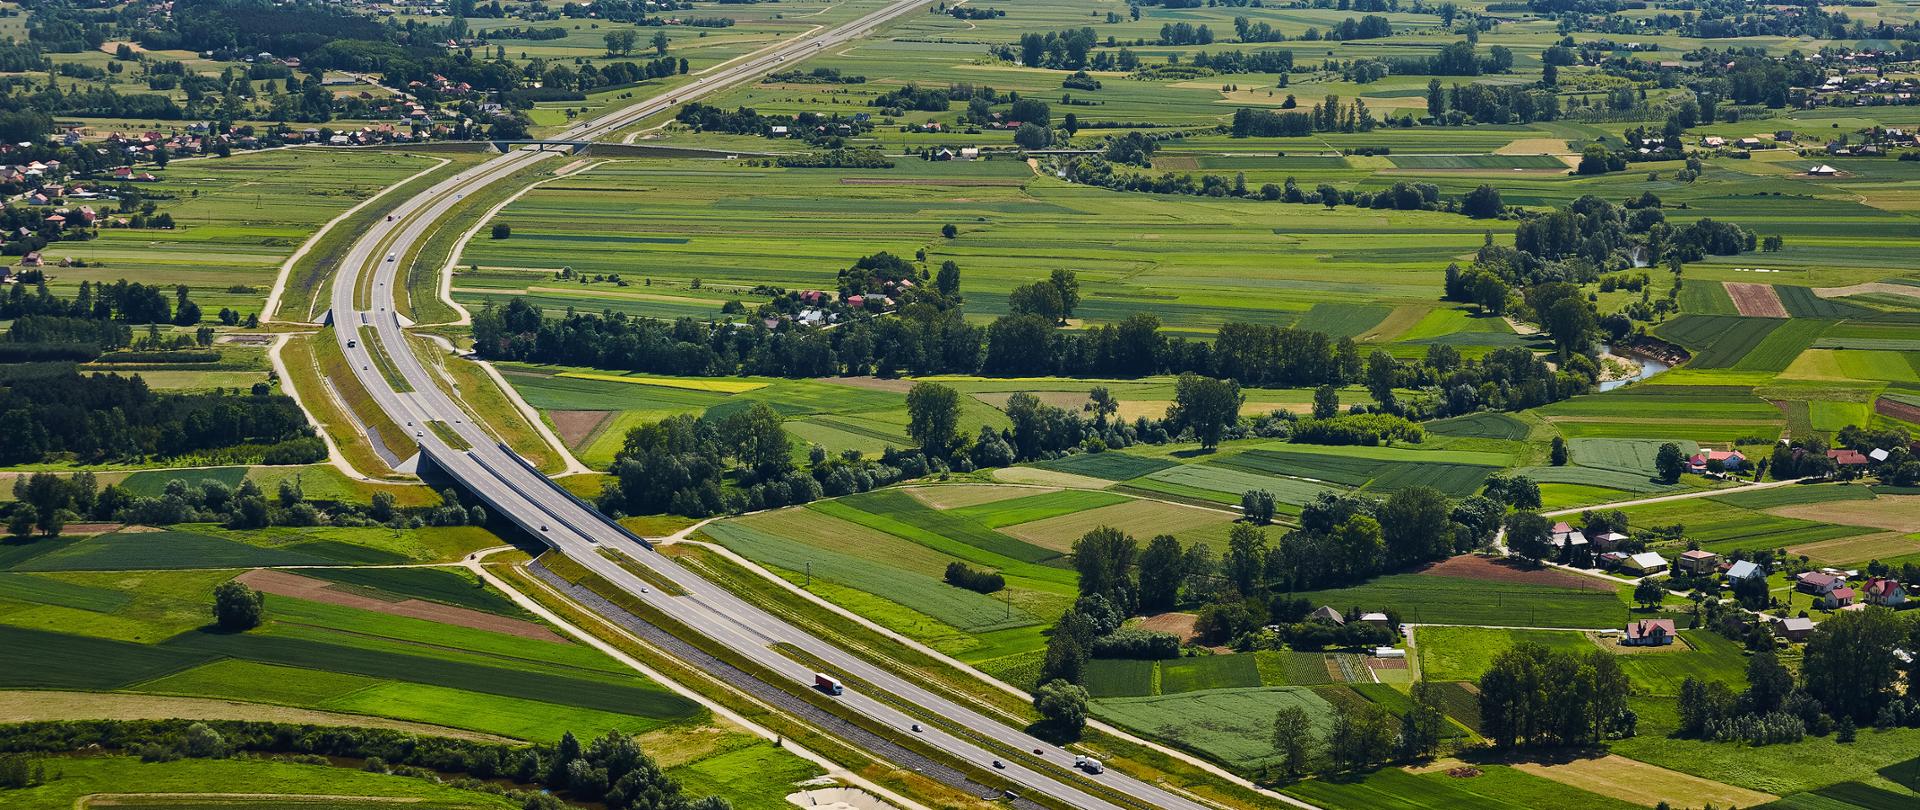 Widok z lotu ptaka na trasę autostrady A4 między Rzeszowem a Jarosławiem